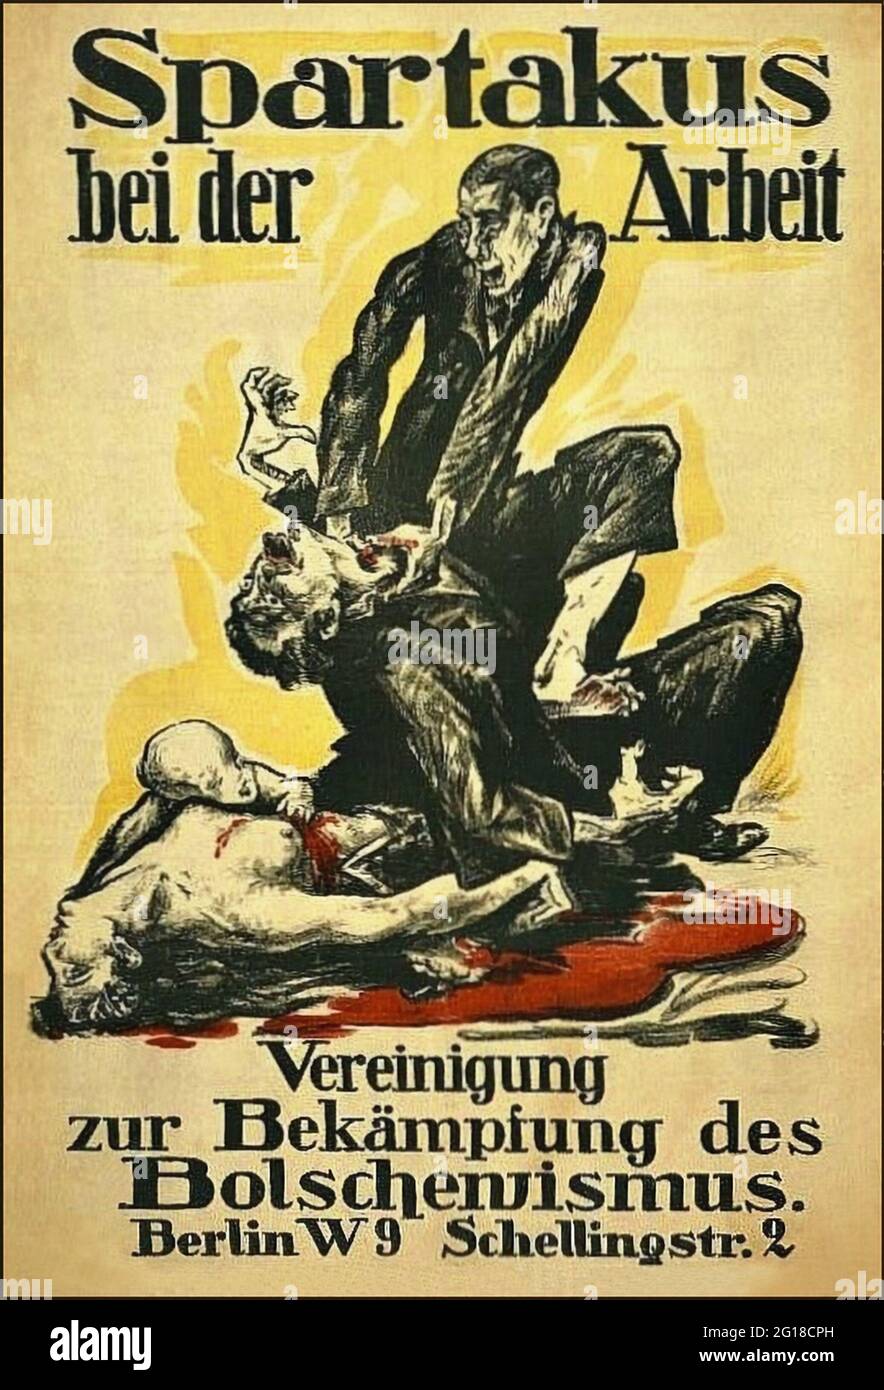 Une affiche allemande anti-communiste de 1919 montrant un homme à la traque un autre avec le slogan 'Spartacus at Work'. Spartacus était un groupe communiste à Berlin après la première Guerre mondiale. Banque D'Images